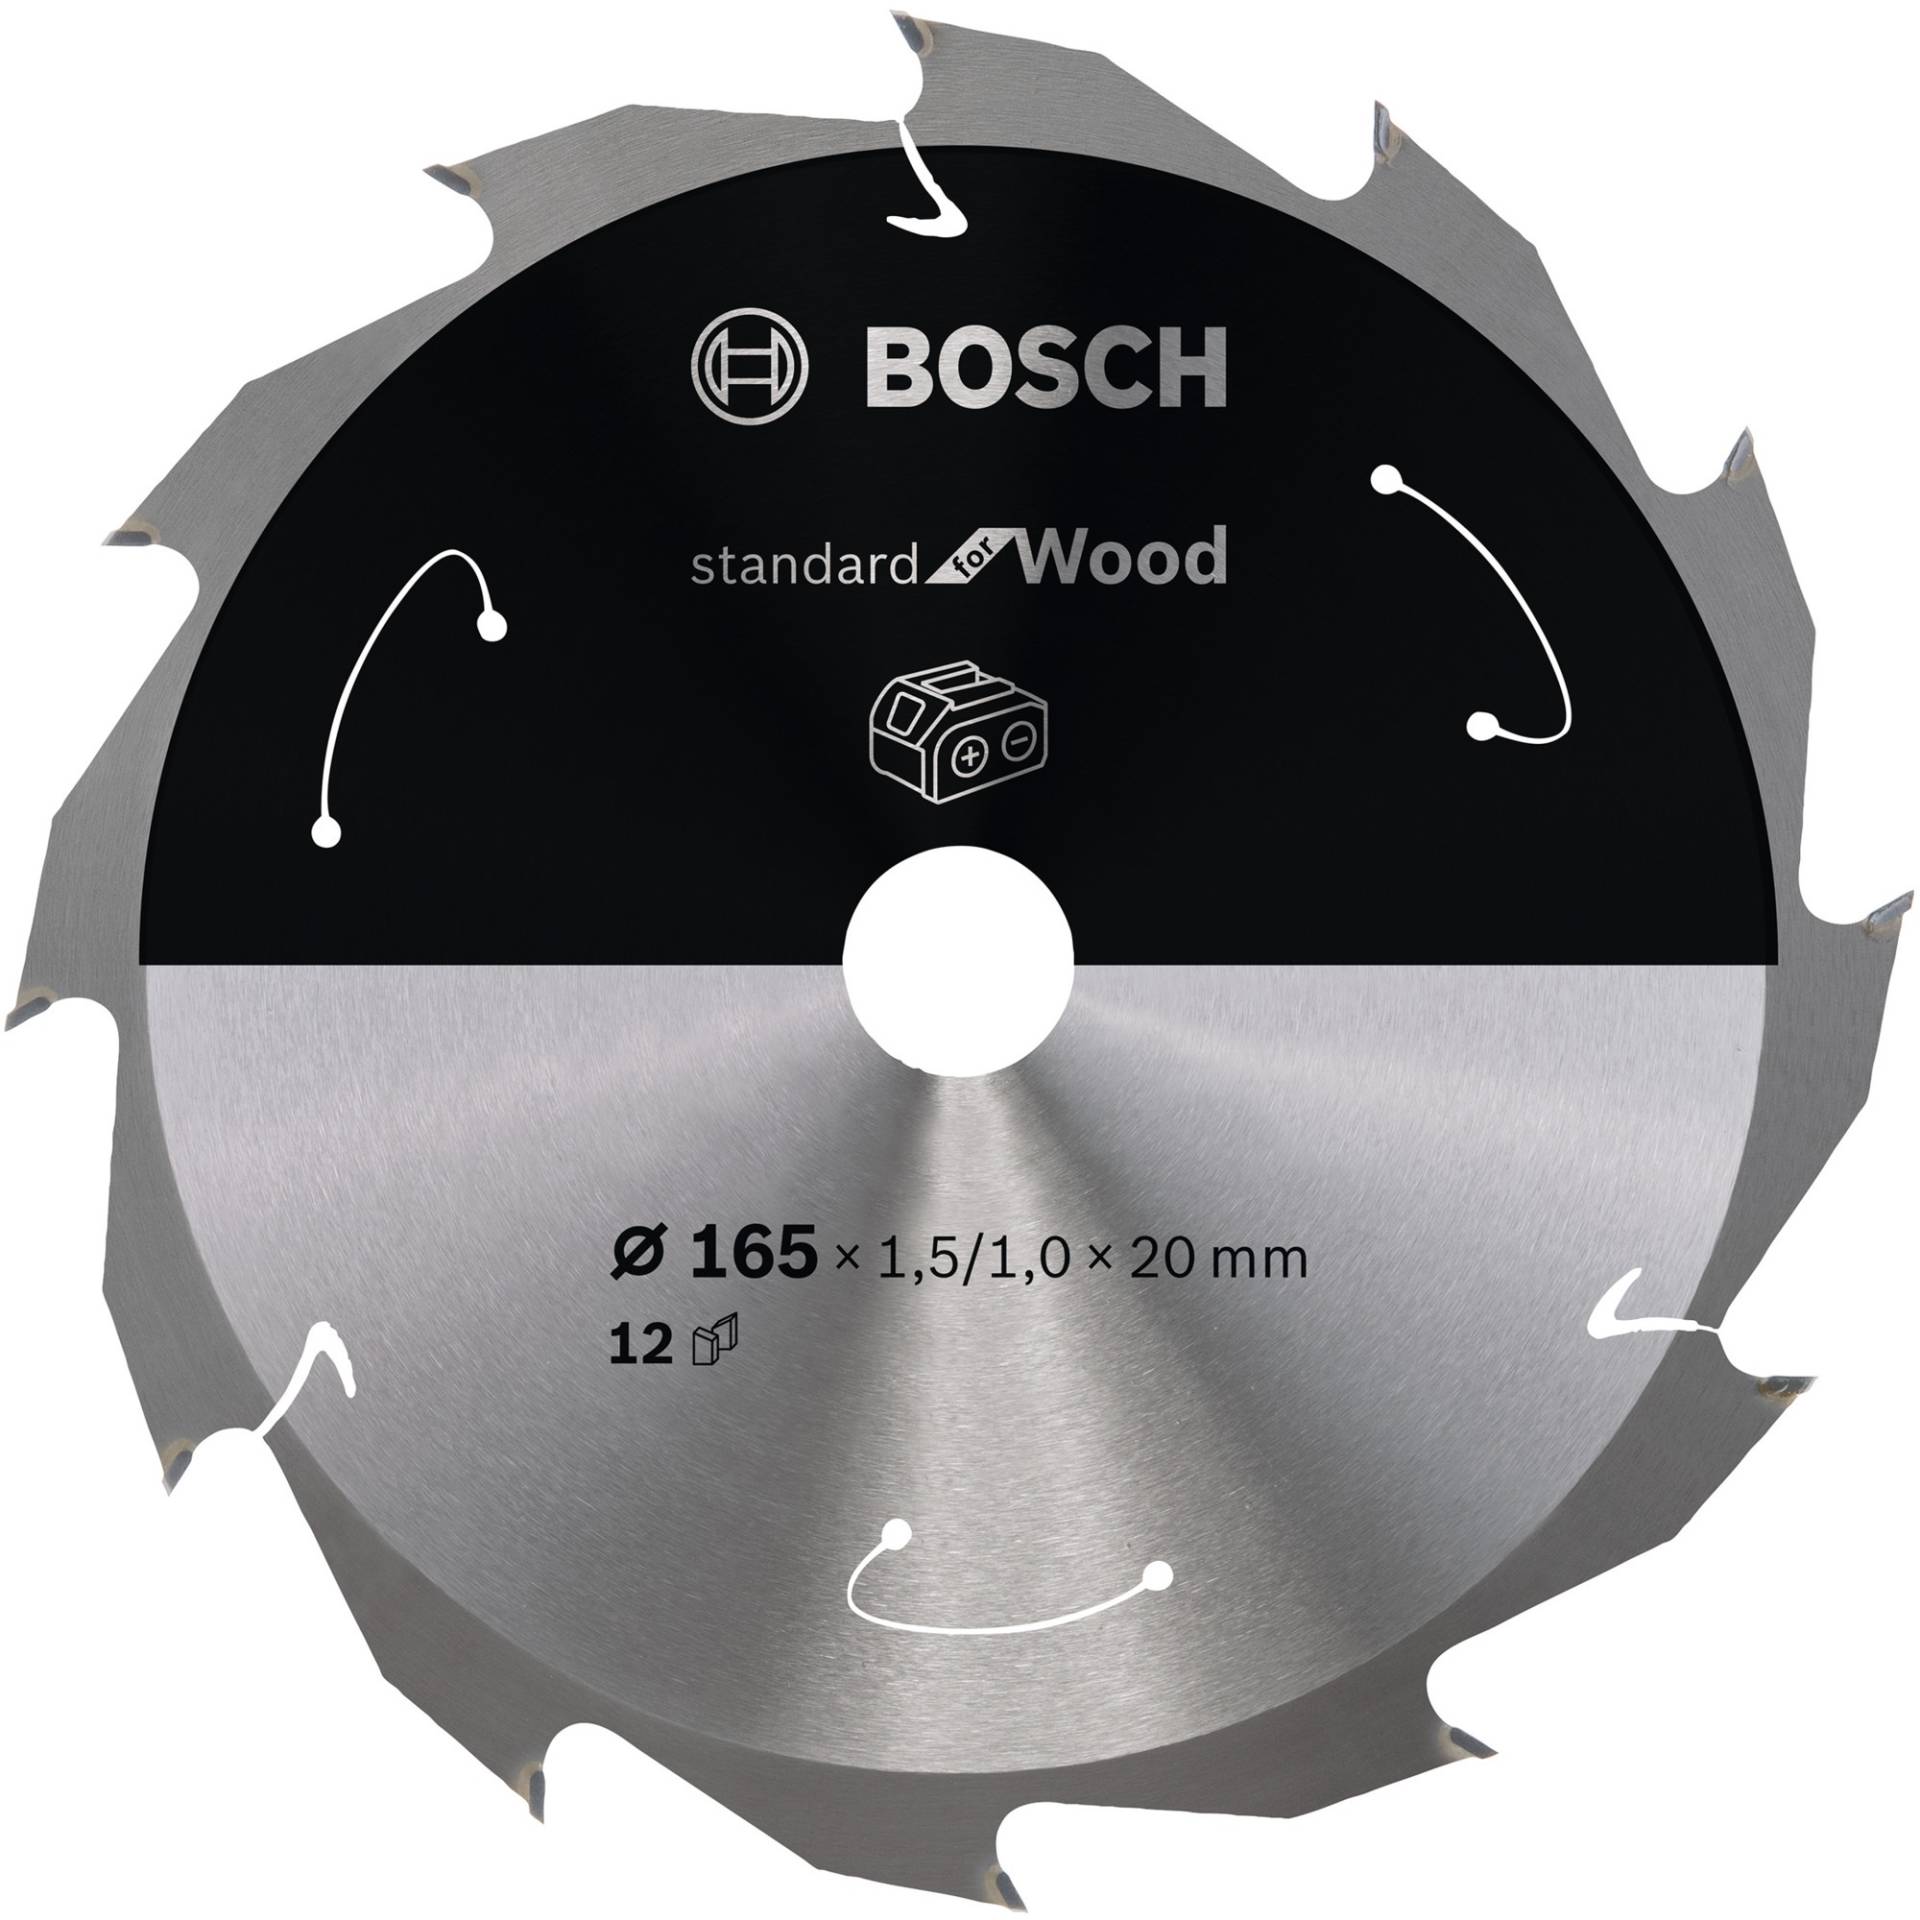 Kreissägeblatt Standard for Wood, Ø 165mm, 12Z von Bosch